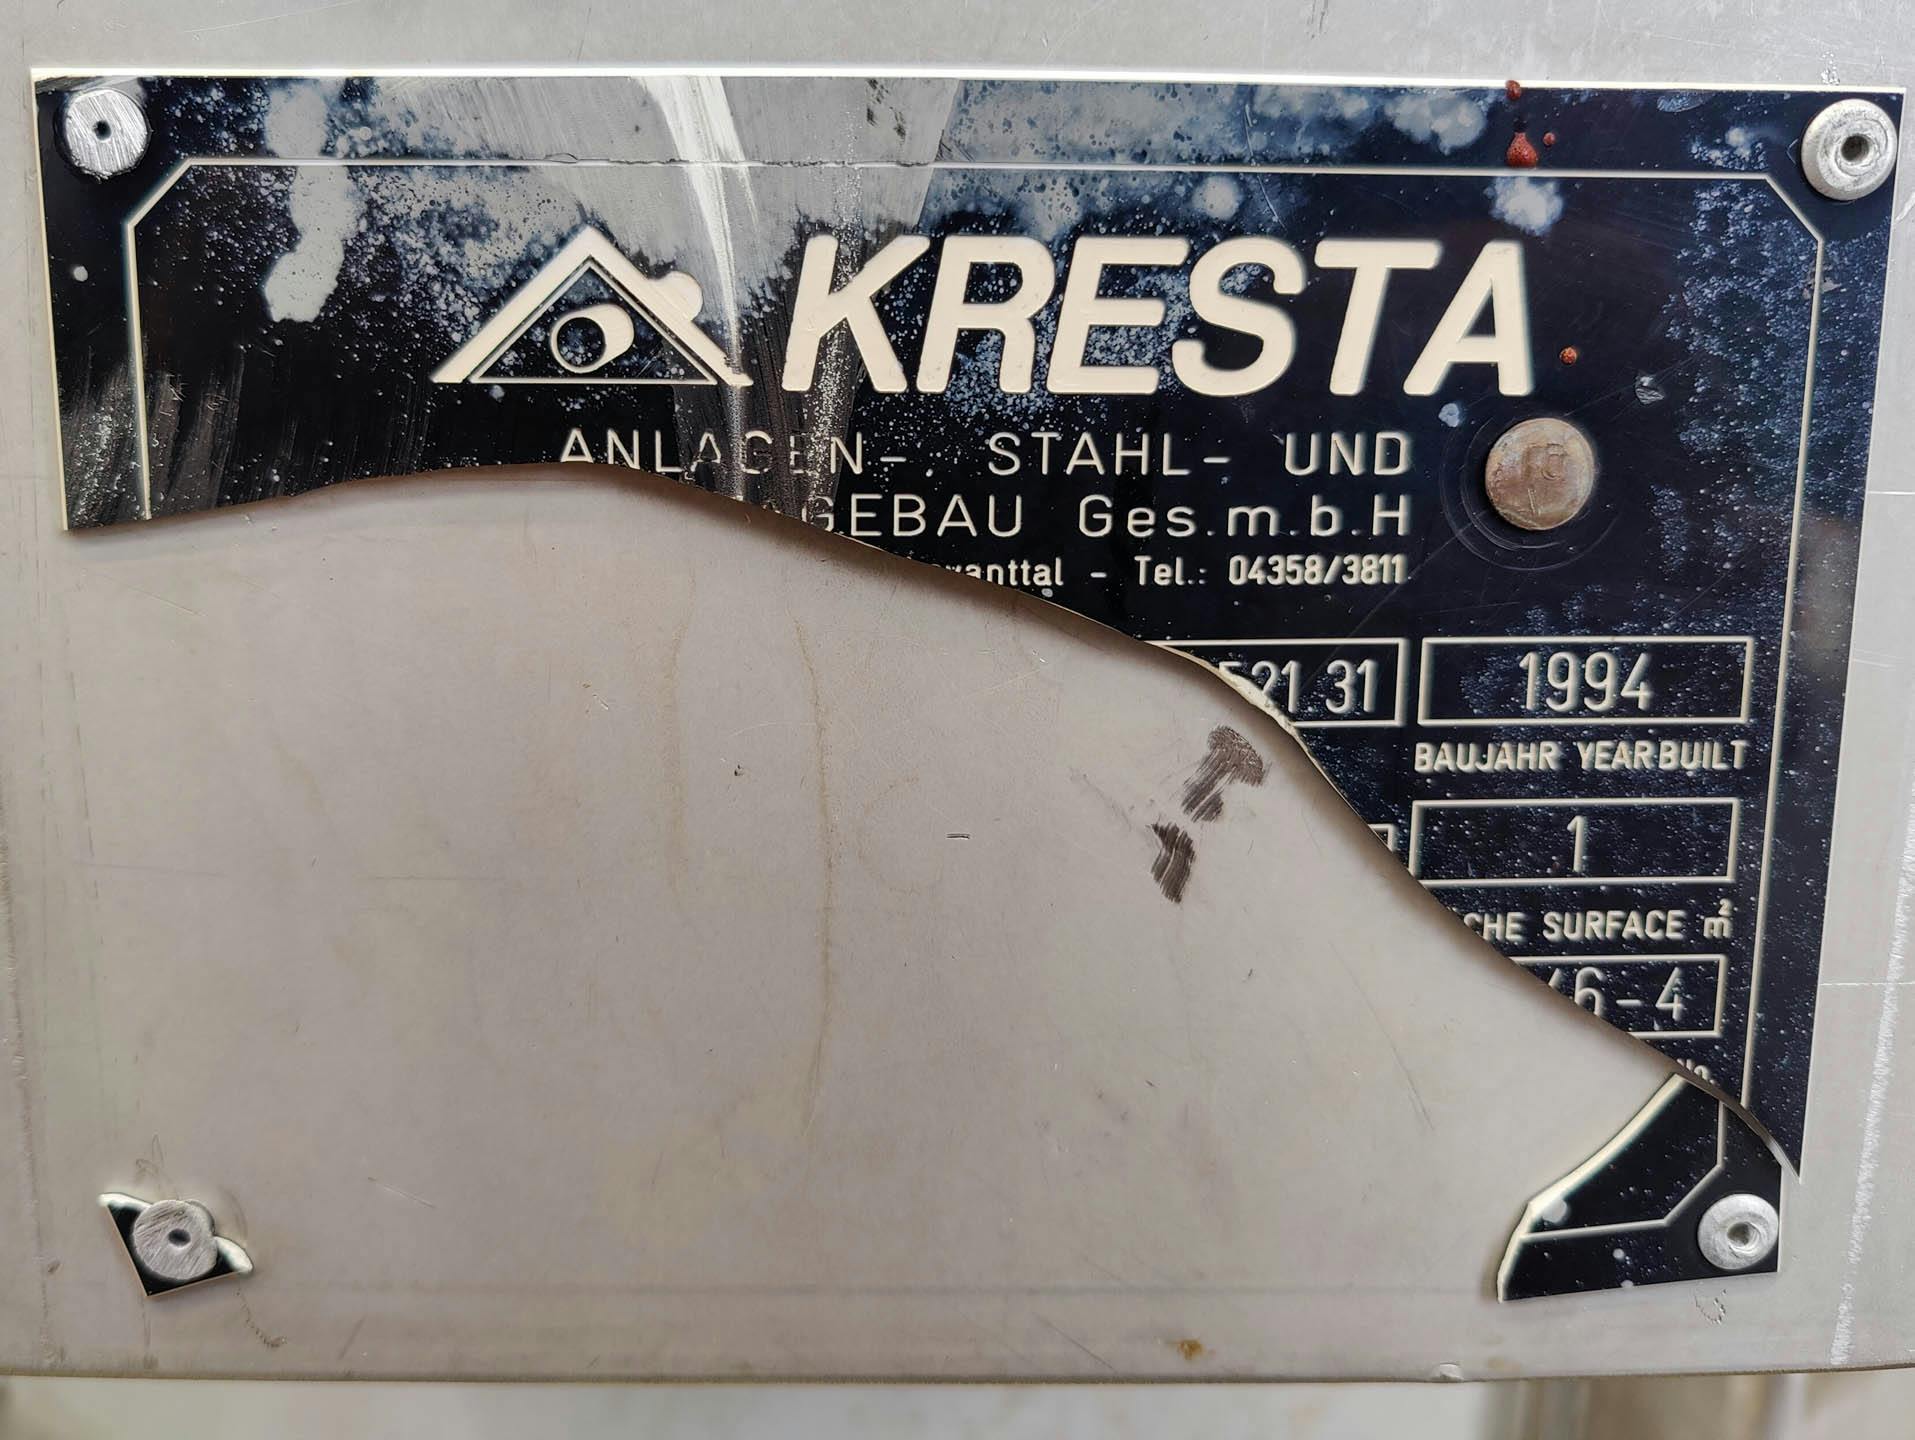 Kresta 250 Ltr. - Drukketel - image 7